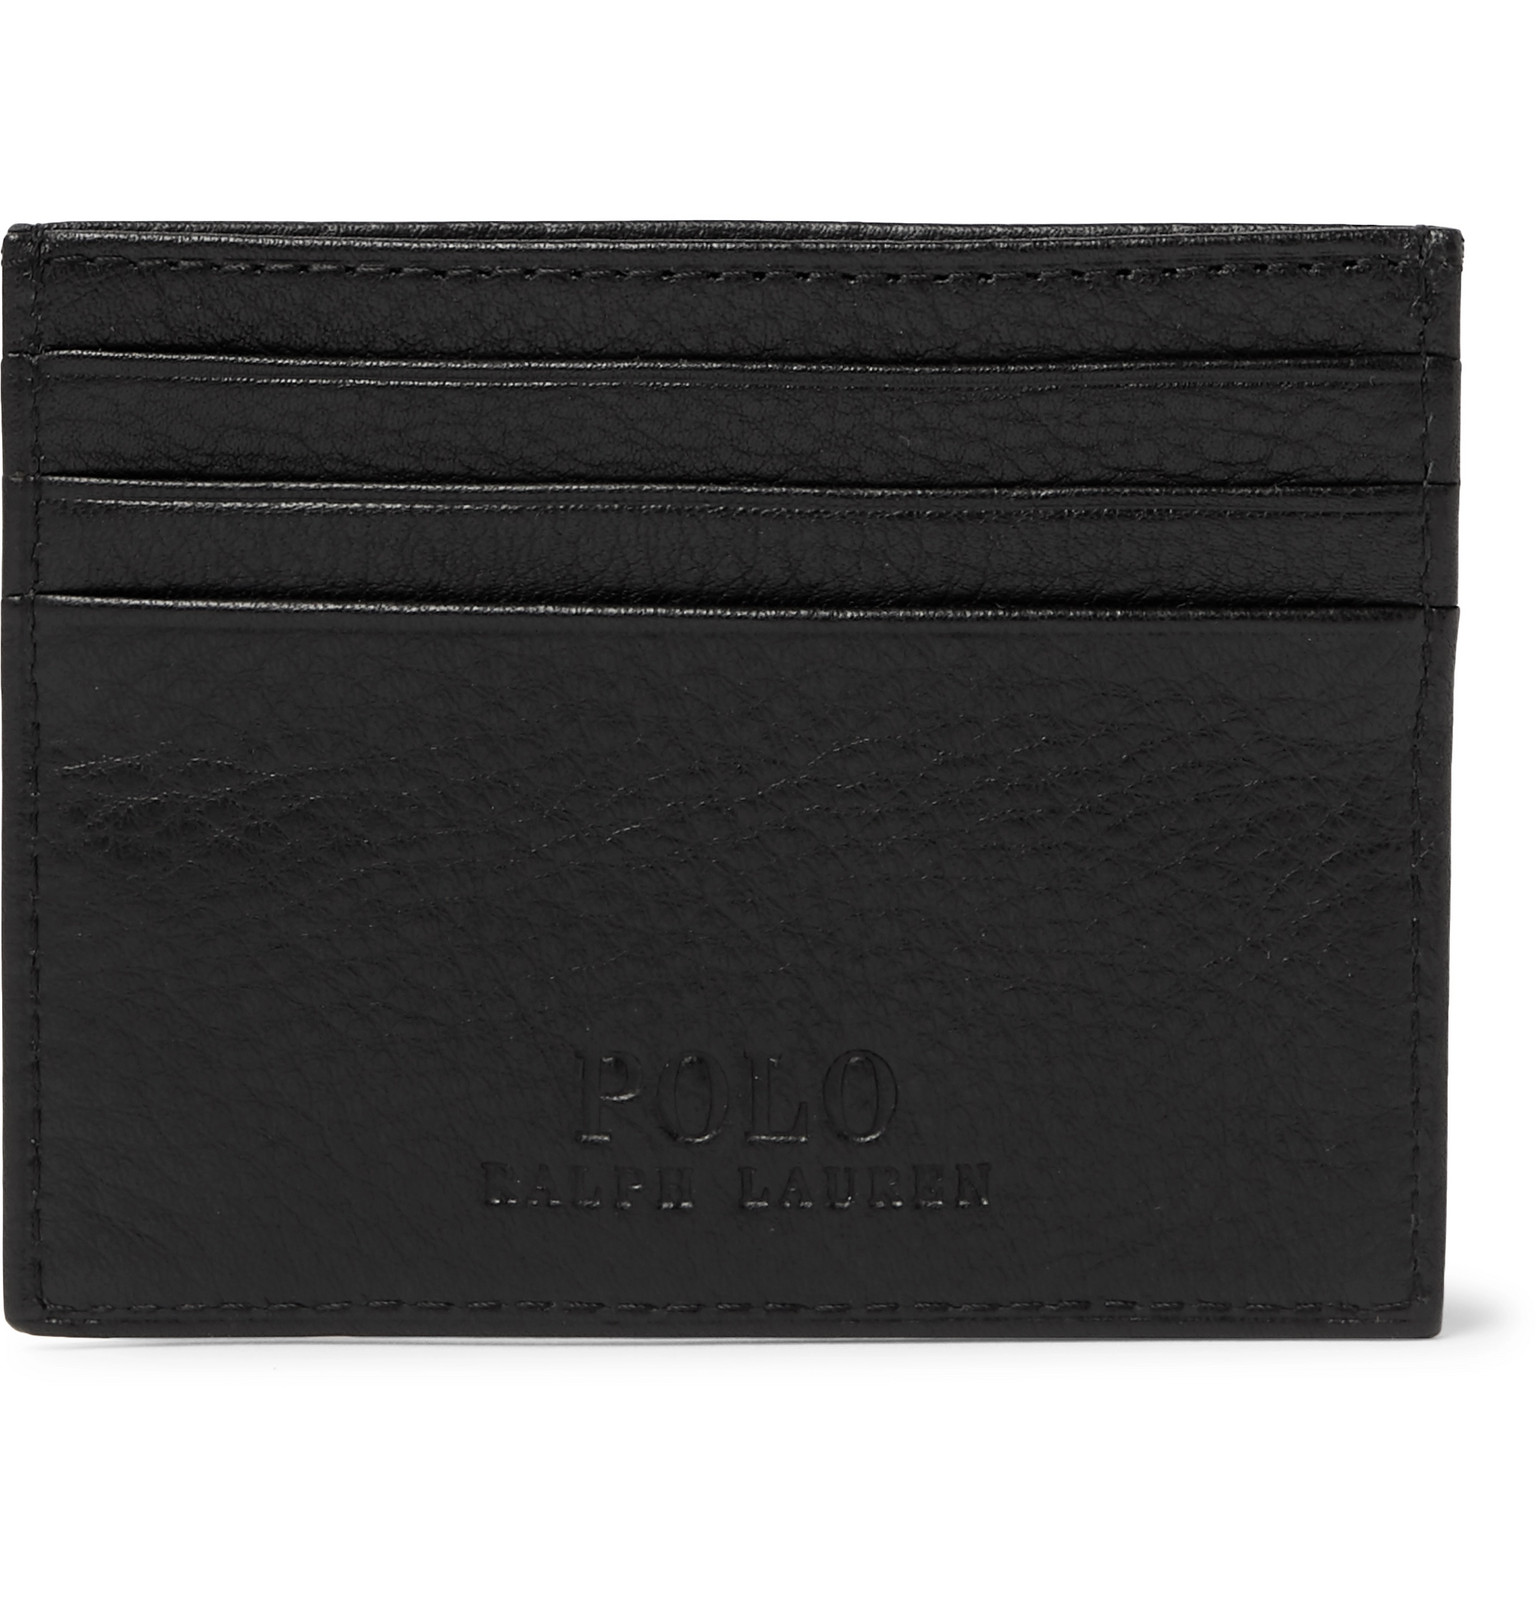 Polo Ralph Lauren - Full-Grain Leather Cardholder - Men - Black | The ...